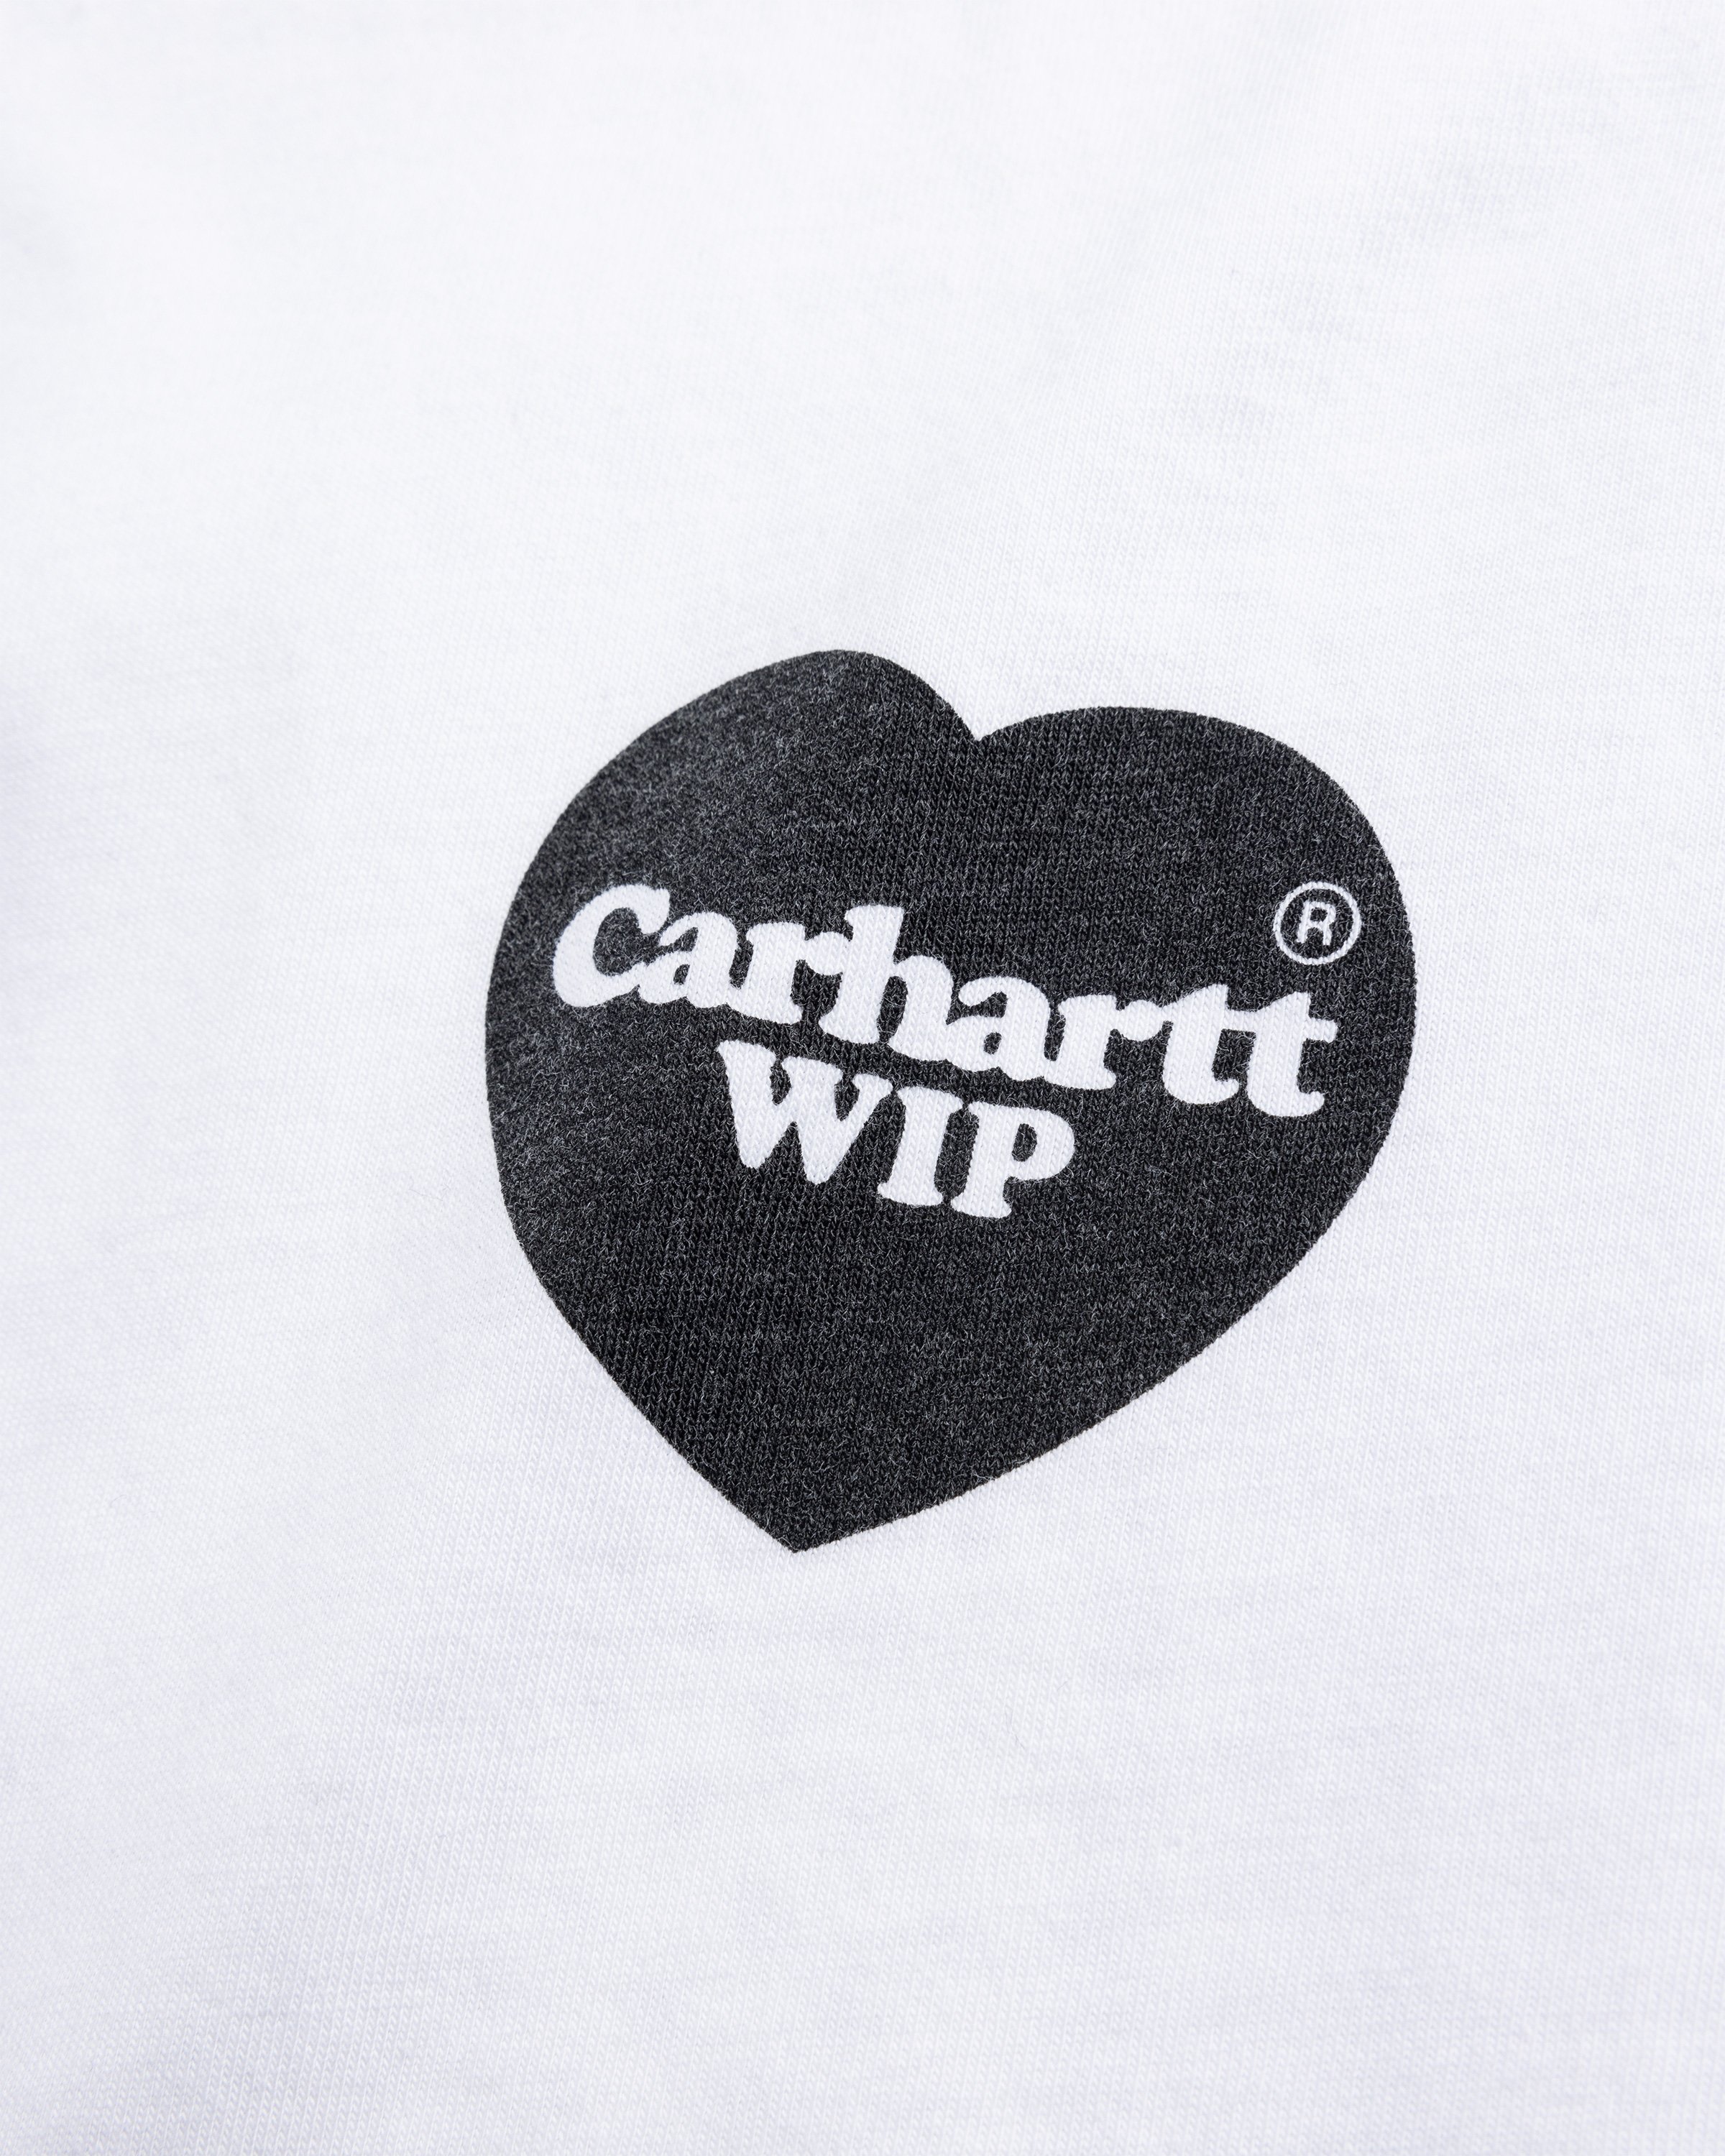 Carhartt WIP - S/S Heart Bandana TShirt White / Black /stone washed - Clothing - White - Image 6